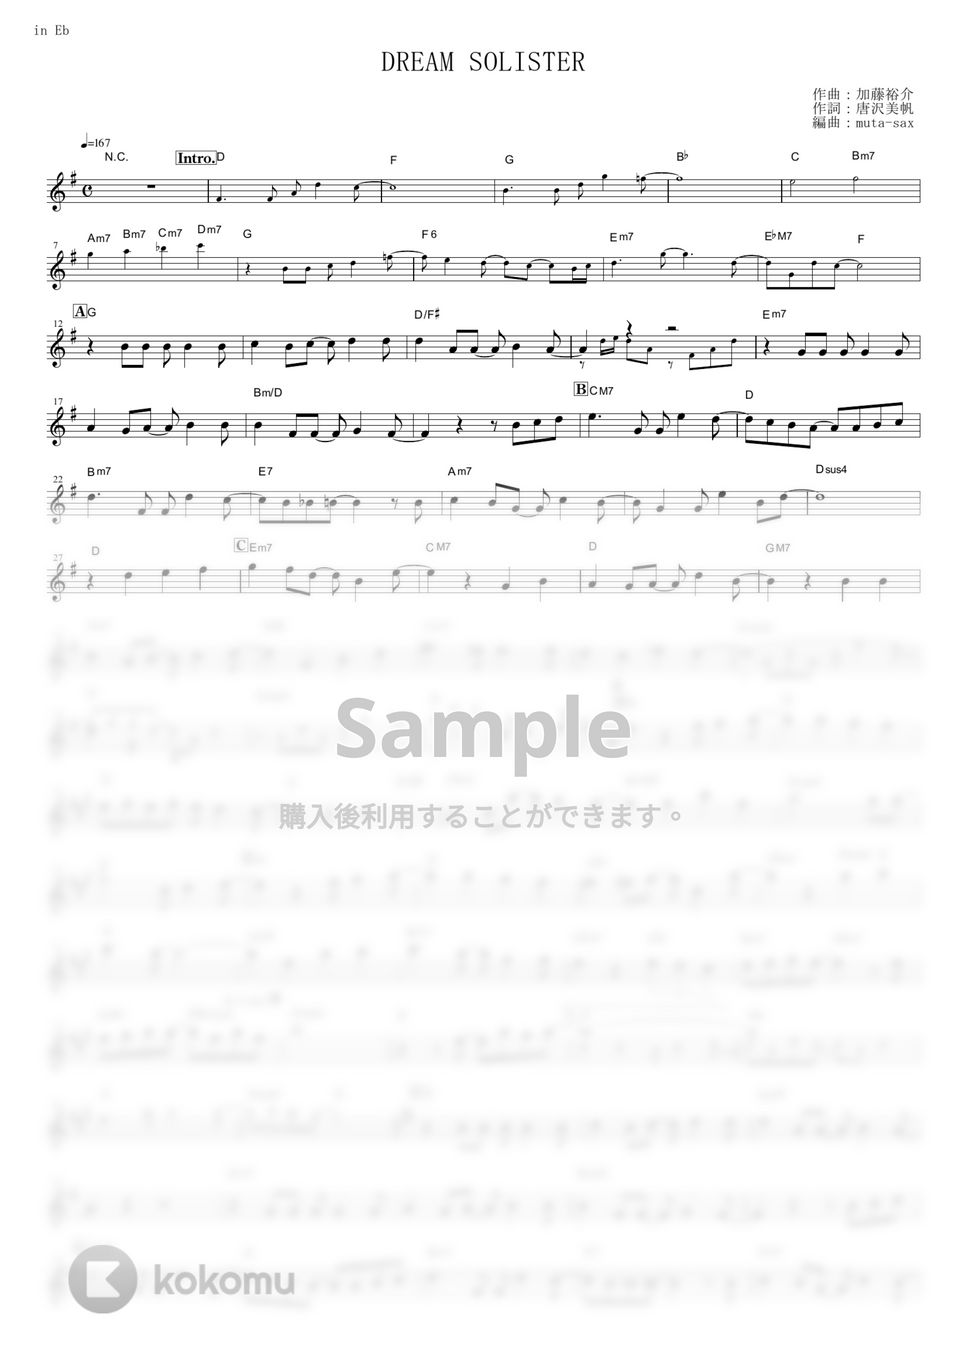 TRUE - DREAM SOLISTER (『響け！ユーフォニアム』 / in Eb) by muta-sax